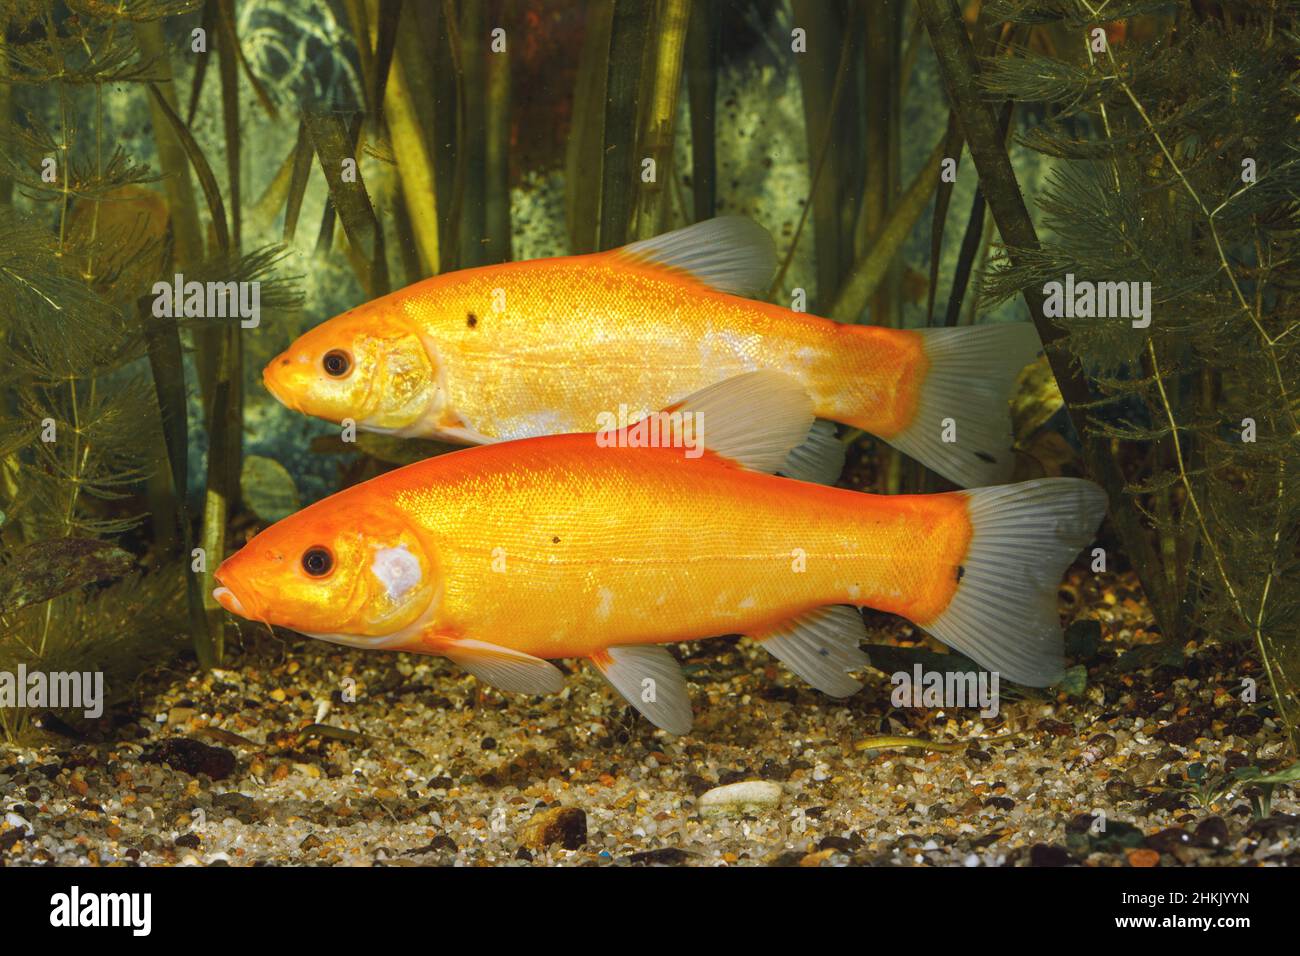 Tench (Tinca tinca), morph de couleur orange, femelle et mâle à l'arrière-plan, Allemagne Banque D'Images